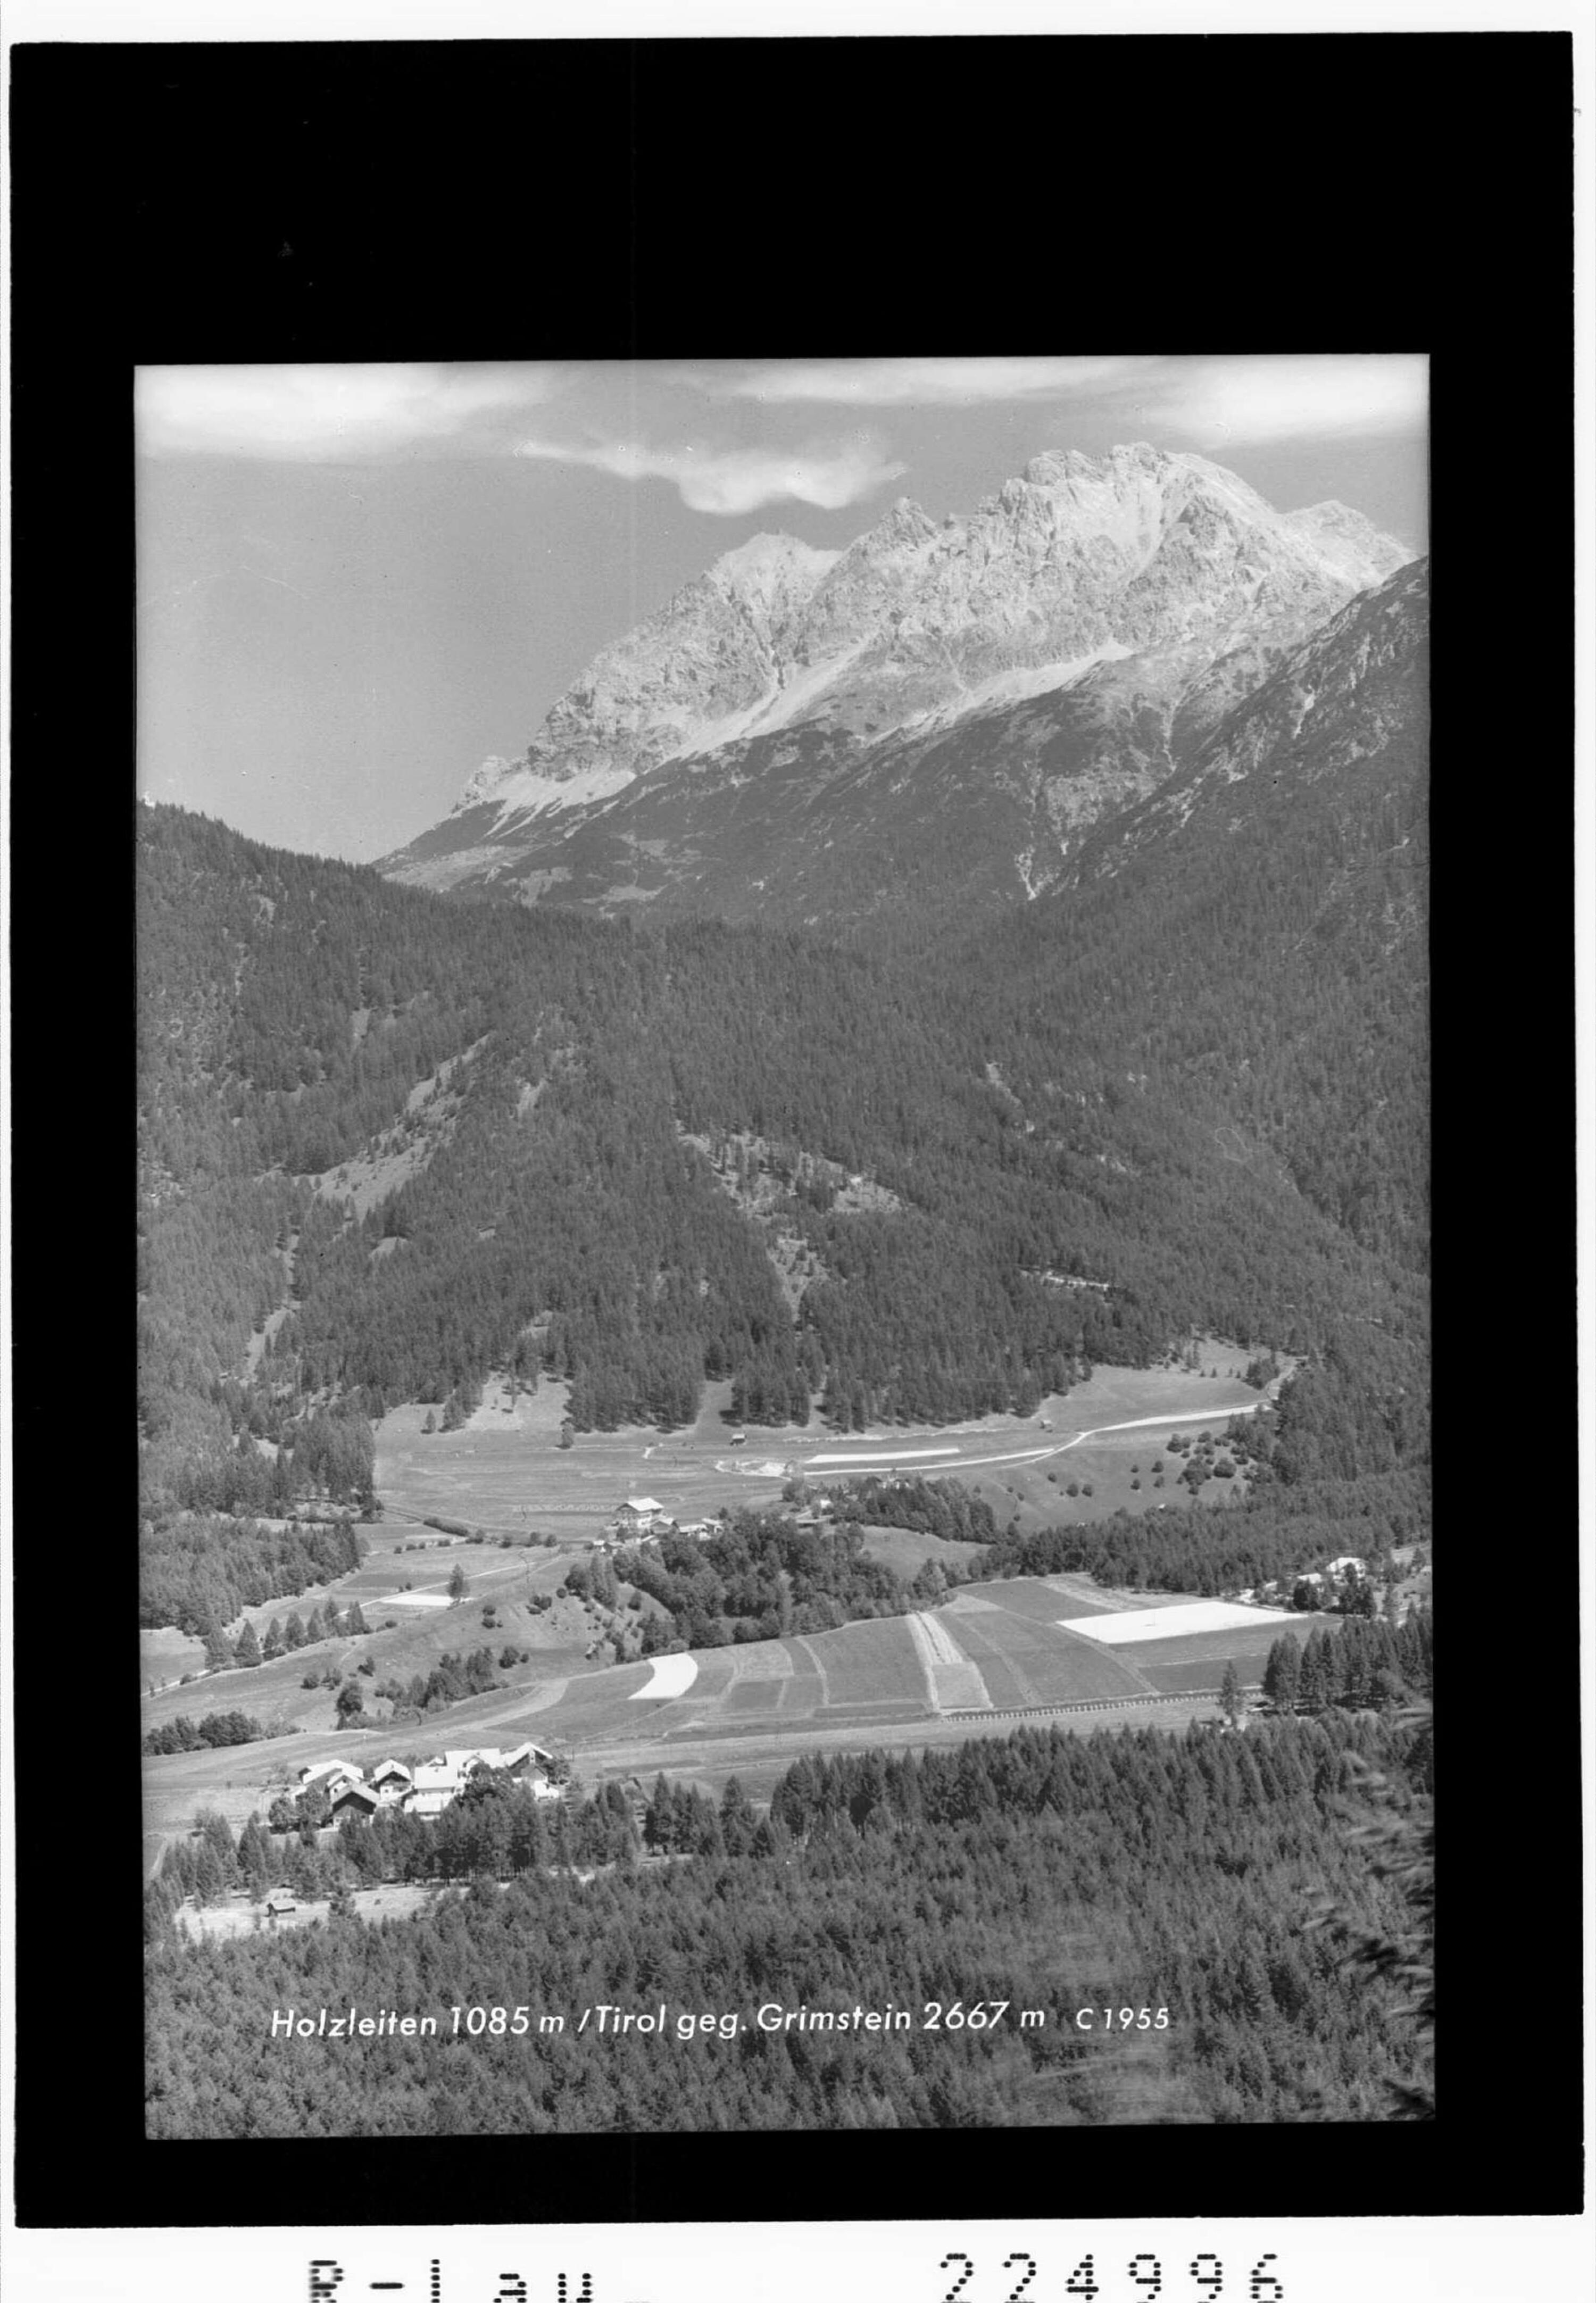 Holzleiten 1085 m / Tirol gegen Grünstein 2667 m></div>


    <hr>
    <div class=